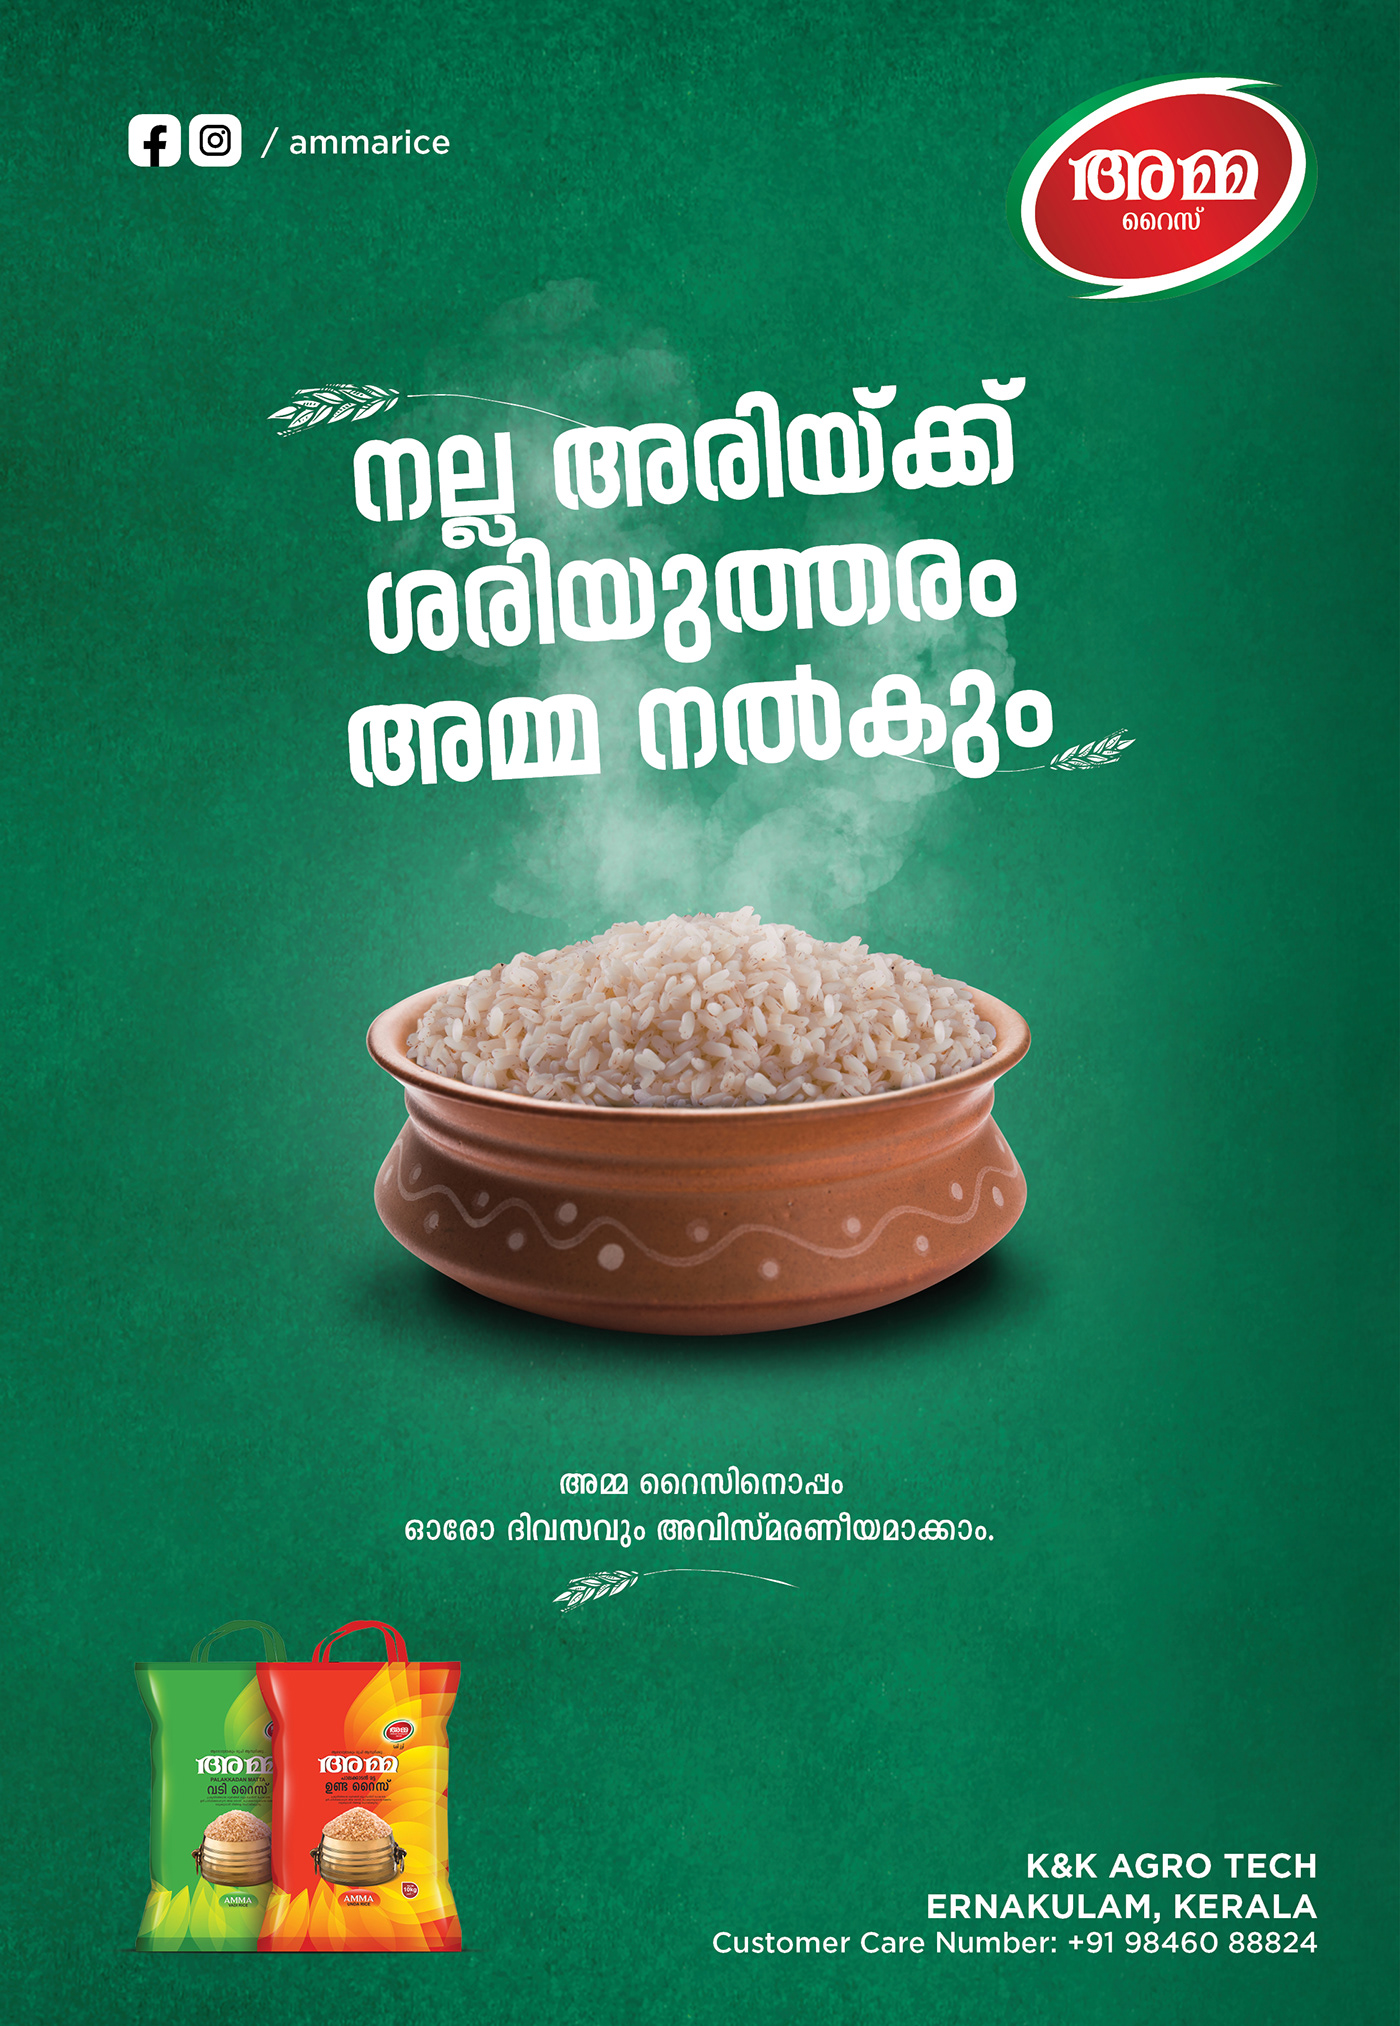 Amma rice Magazine ad on Behance